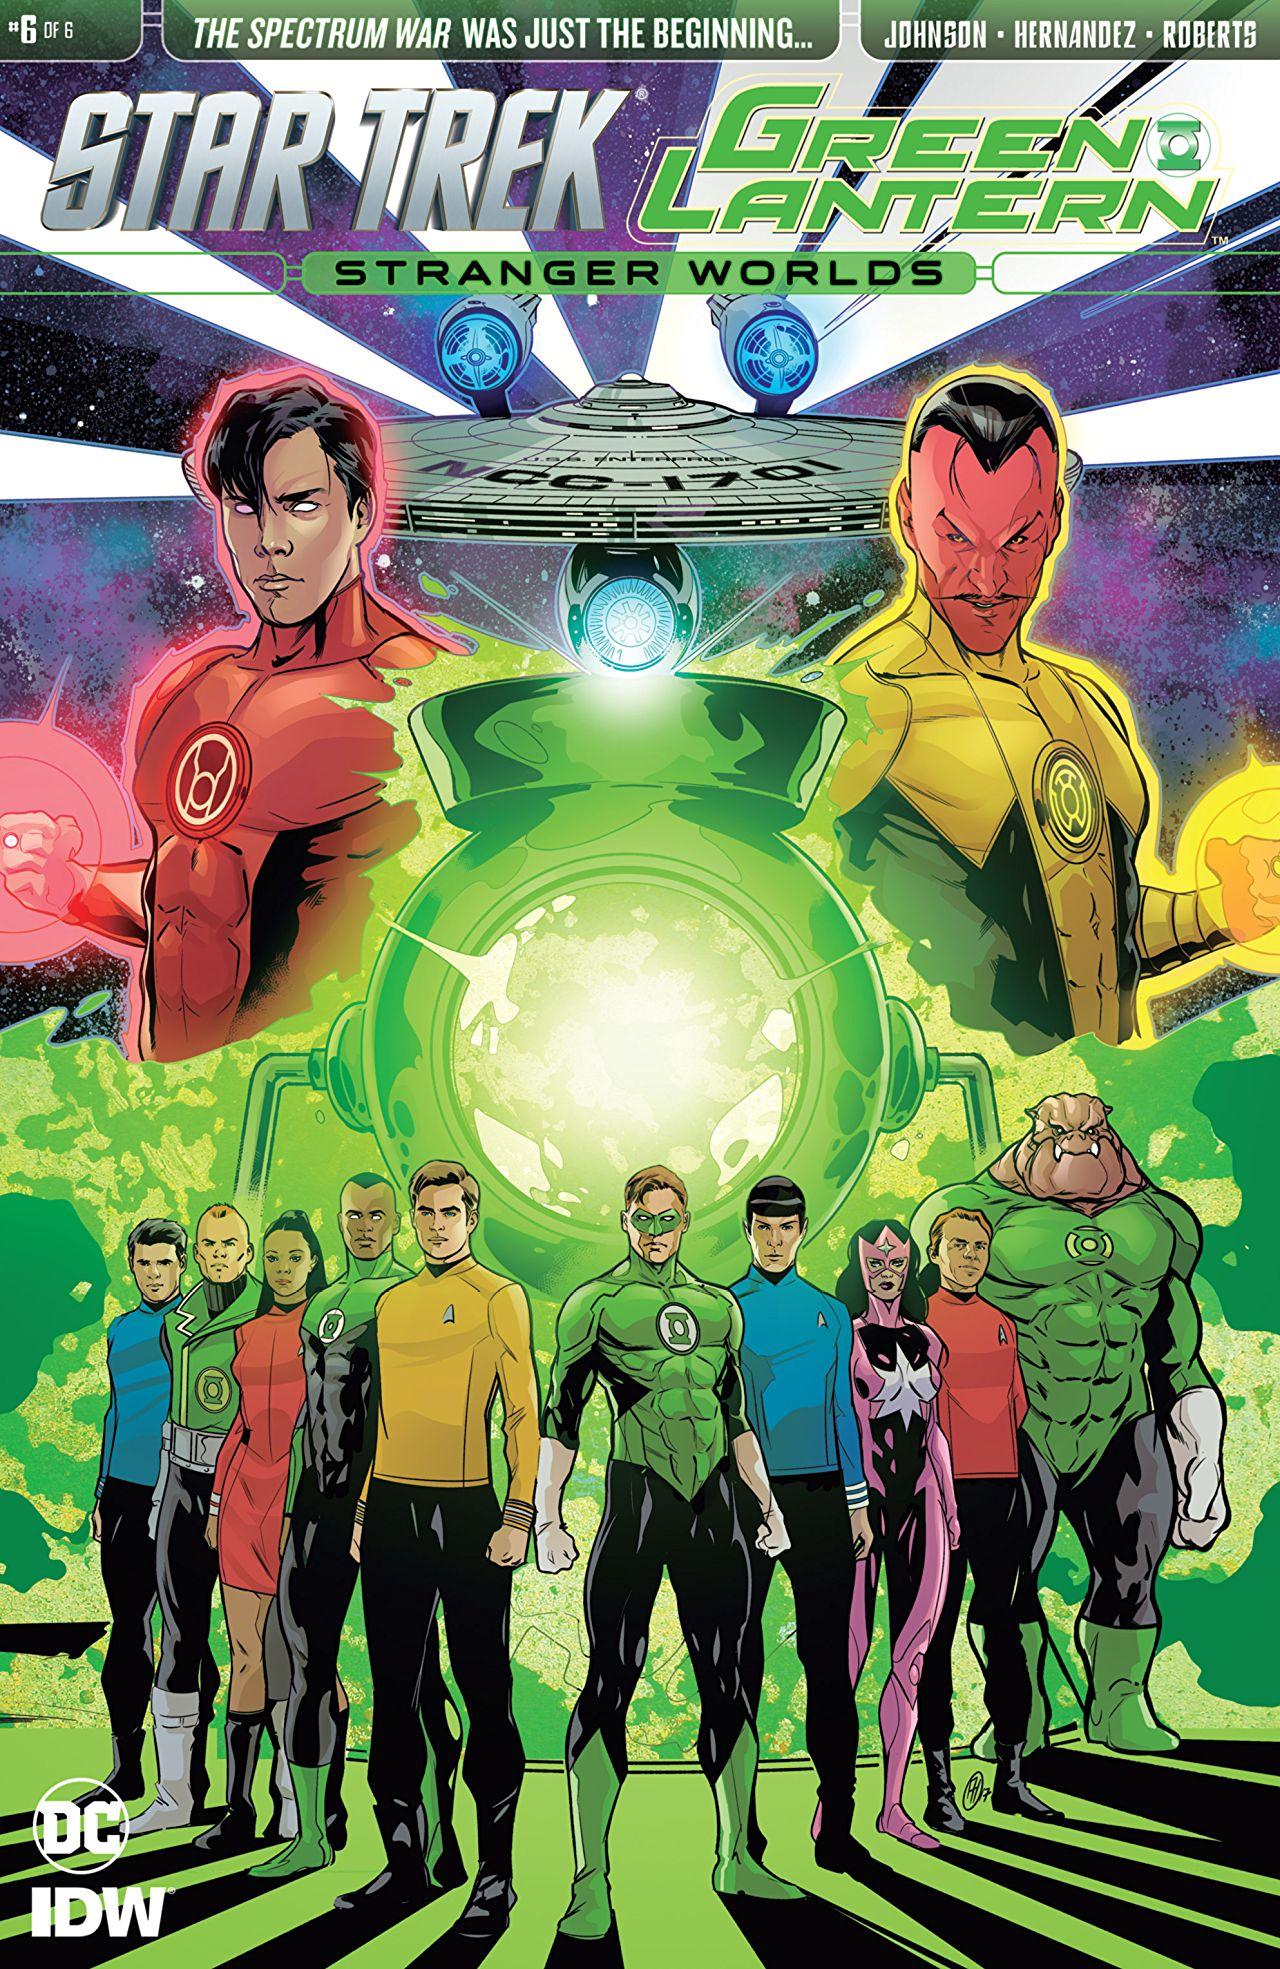 Star Trek/Green Lantern: Stranger Worlds Vol. 1 #6